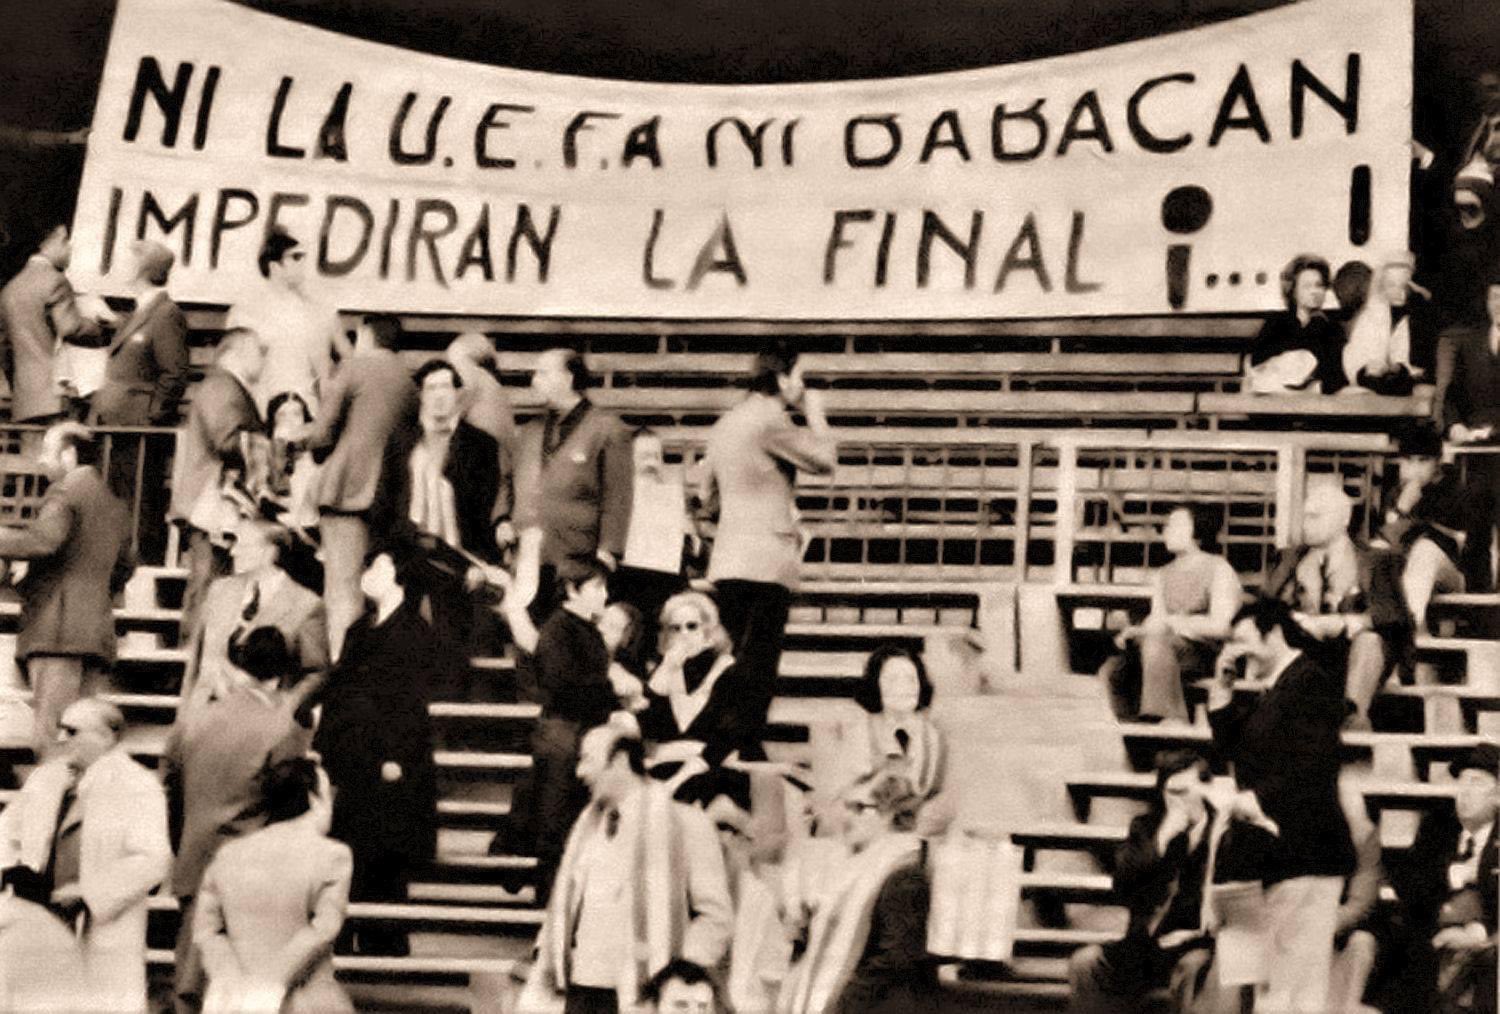 Pancarta contra la UEFA y contra el árbitro Babacan en el Calderón